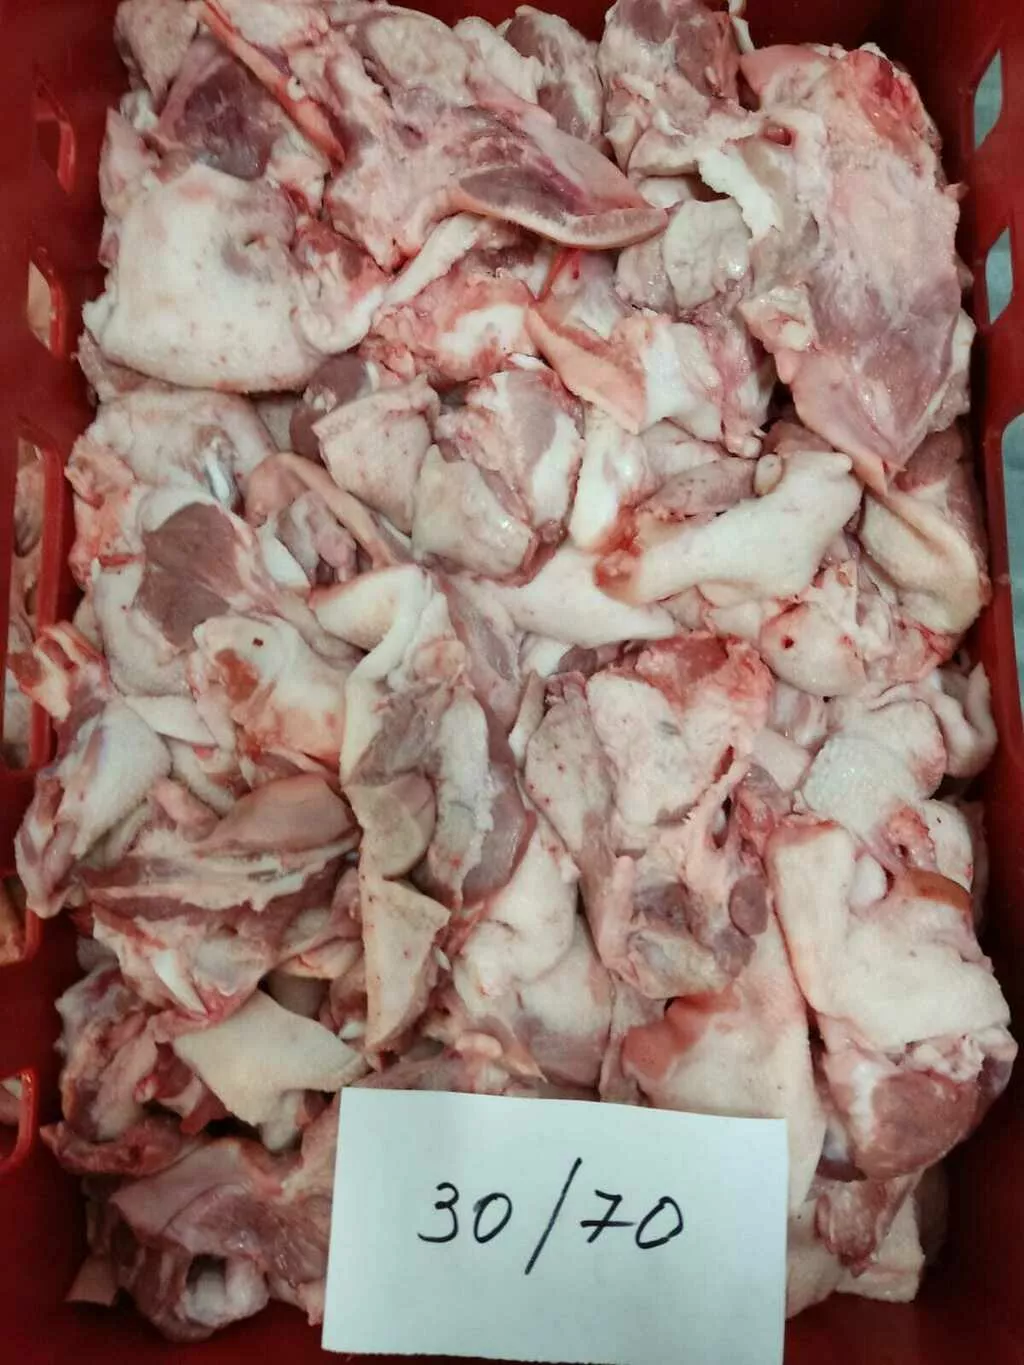 мясо свиных голов 30*70 зам, блок в Усть-Лабинске 2